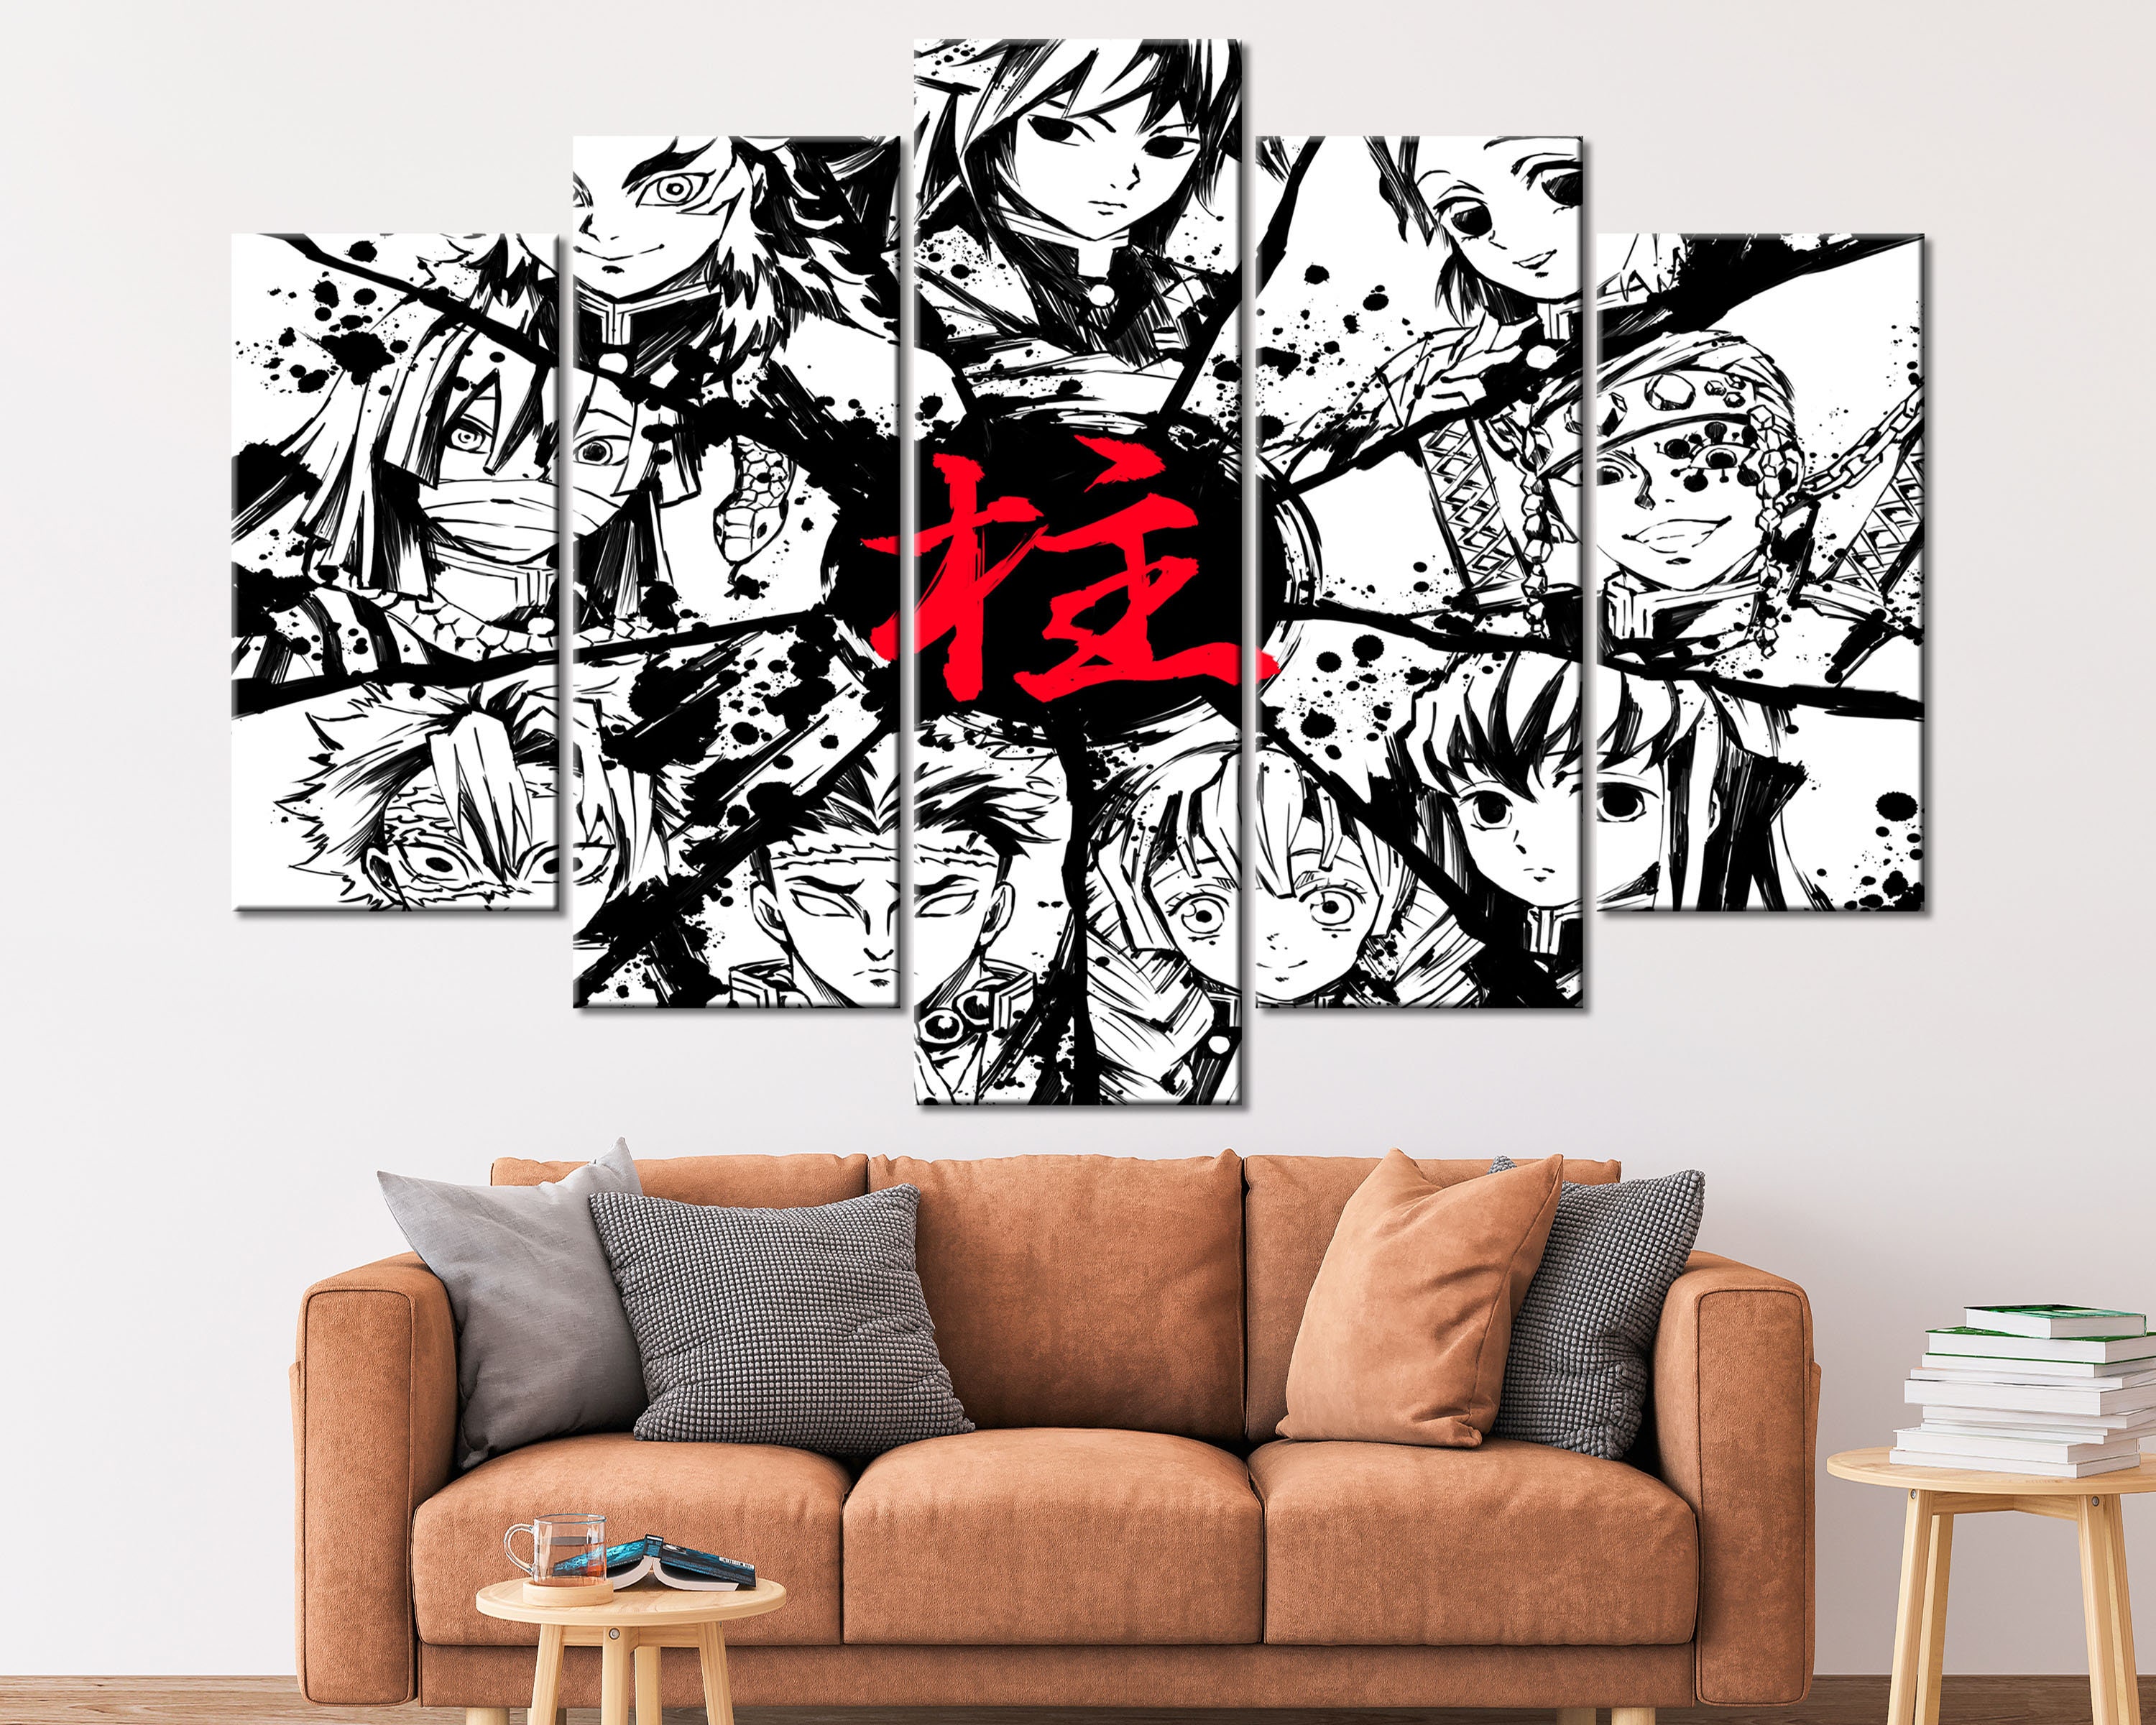 Naruto Uzmakui Metal Print Bold and Vibrant Wall Art for Anime Fans